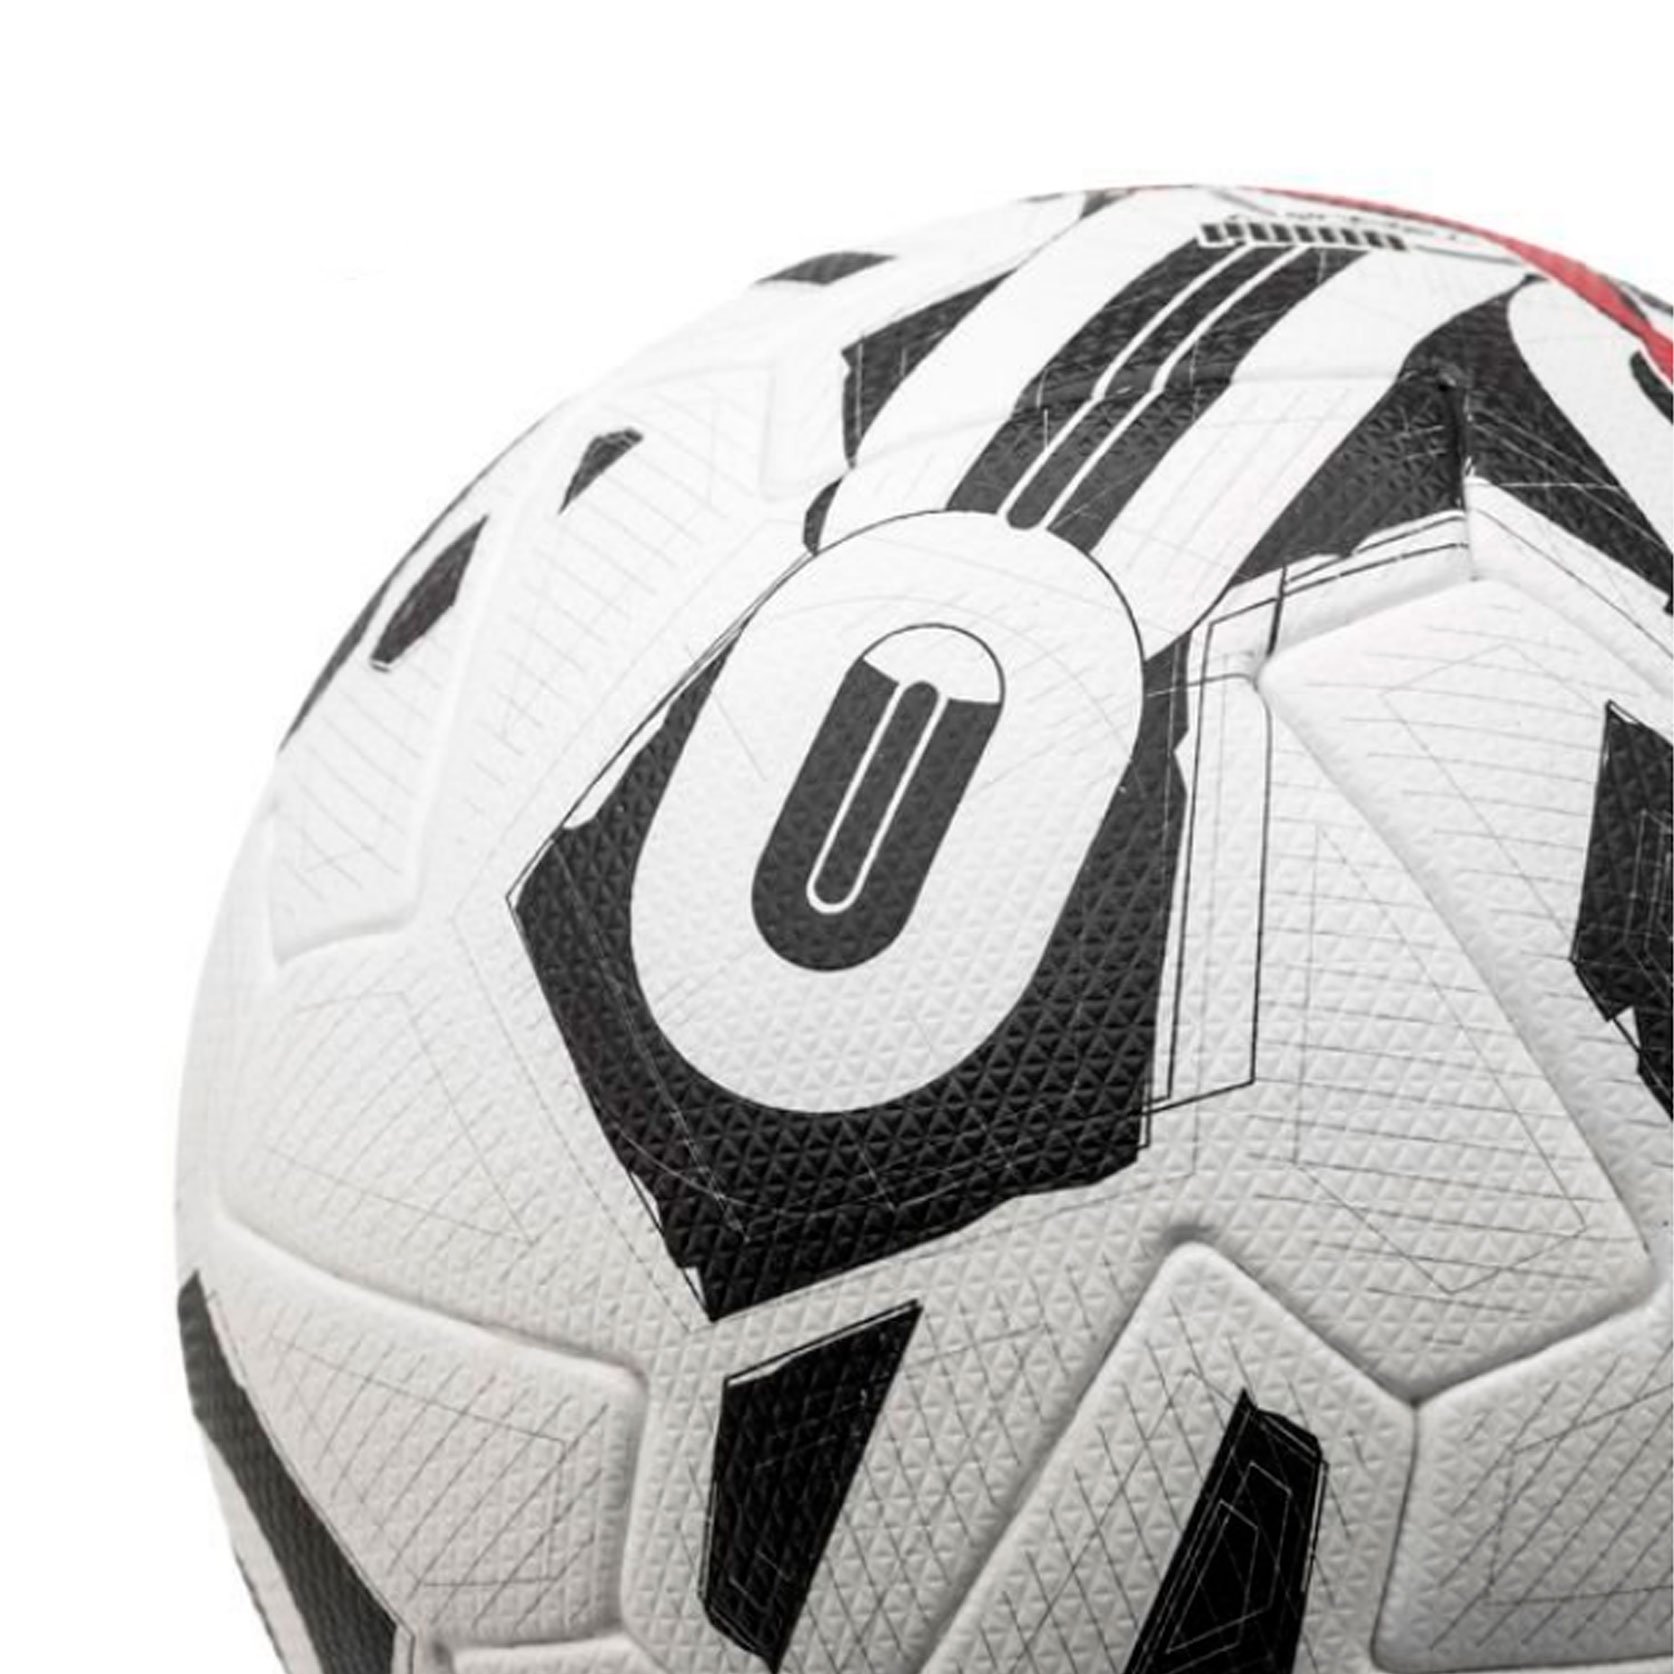 Мяч футбольный Puma Orbita 1 TB (FIFA Quality Pro)